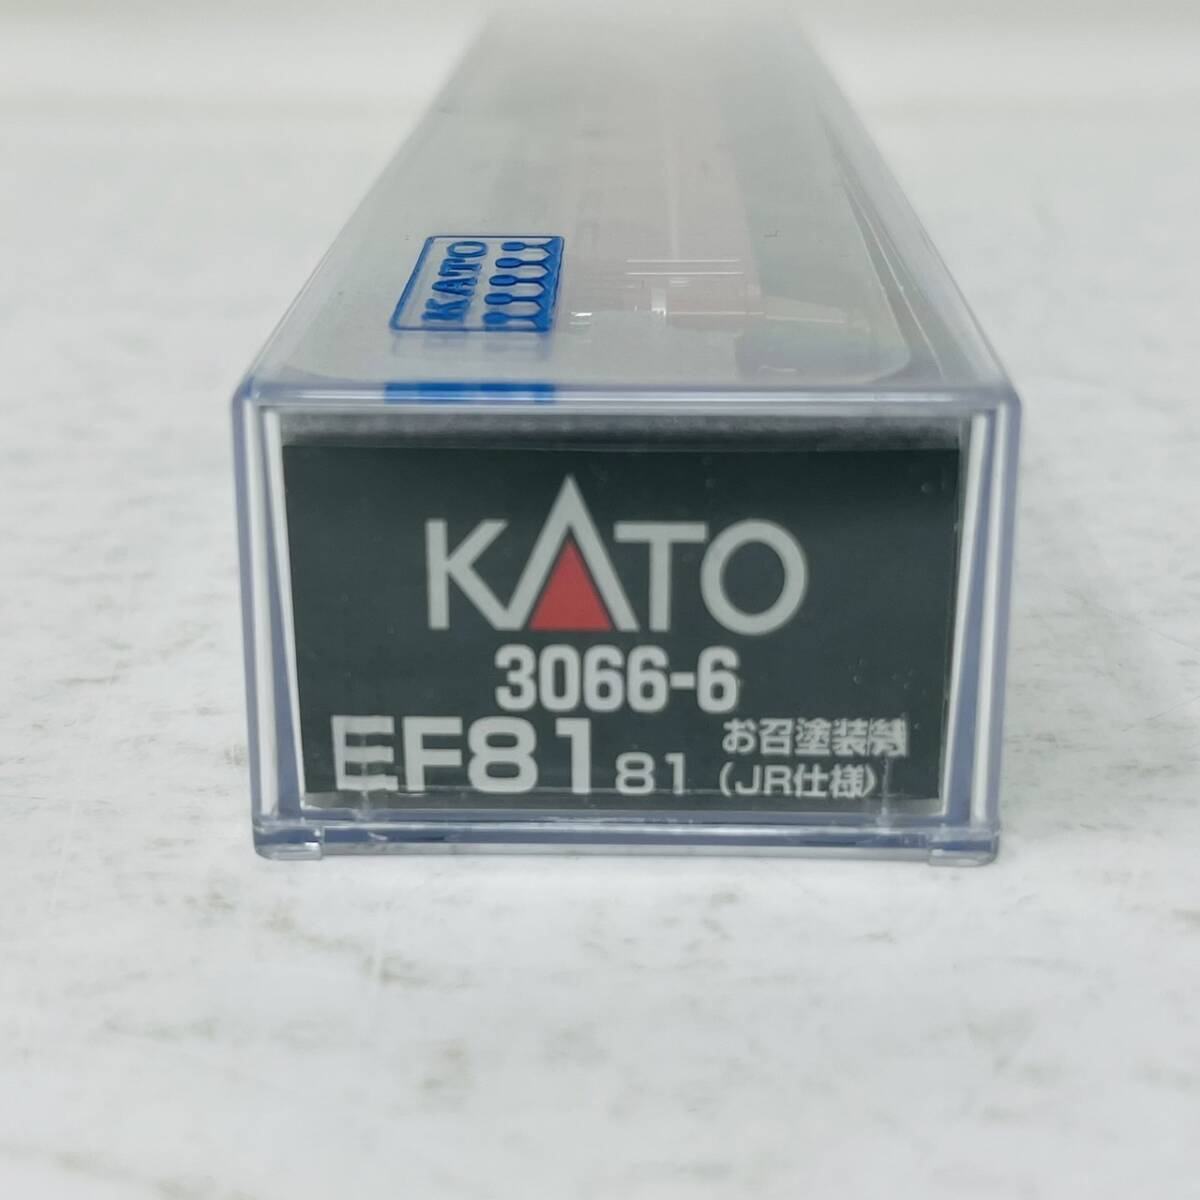 【完品】 KATO 3066‐6 EF81 81 お召塗装機 JR仕様 / Nゲージ 鉄道模型 N-GAUGE カトー_画像2